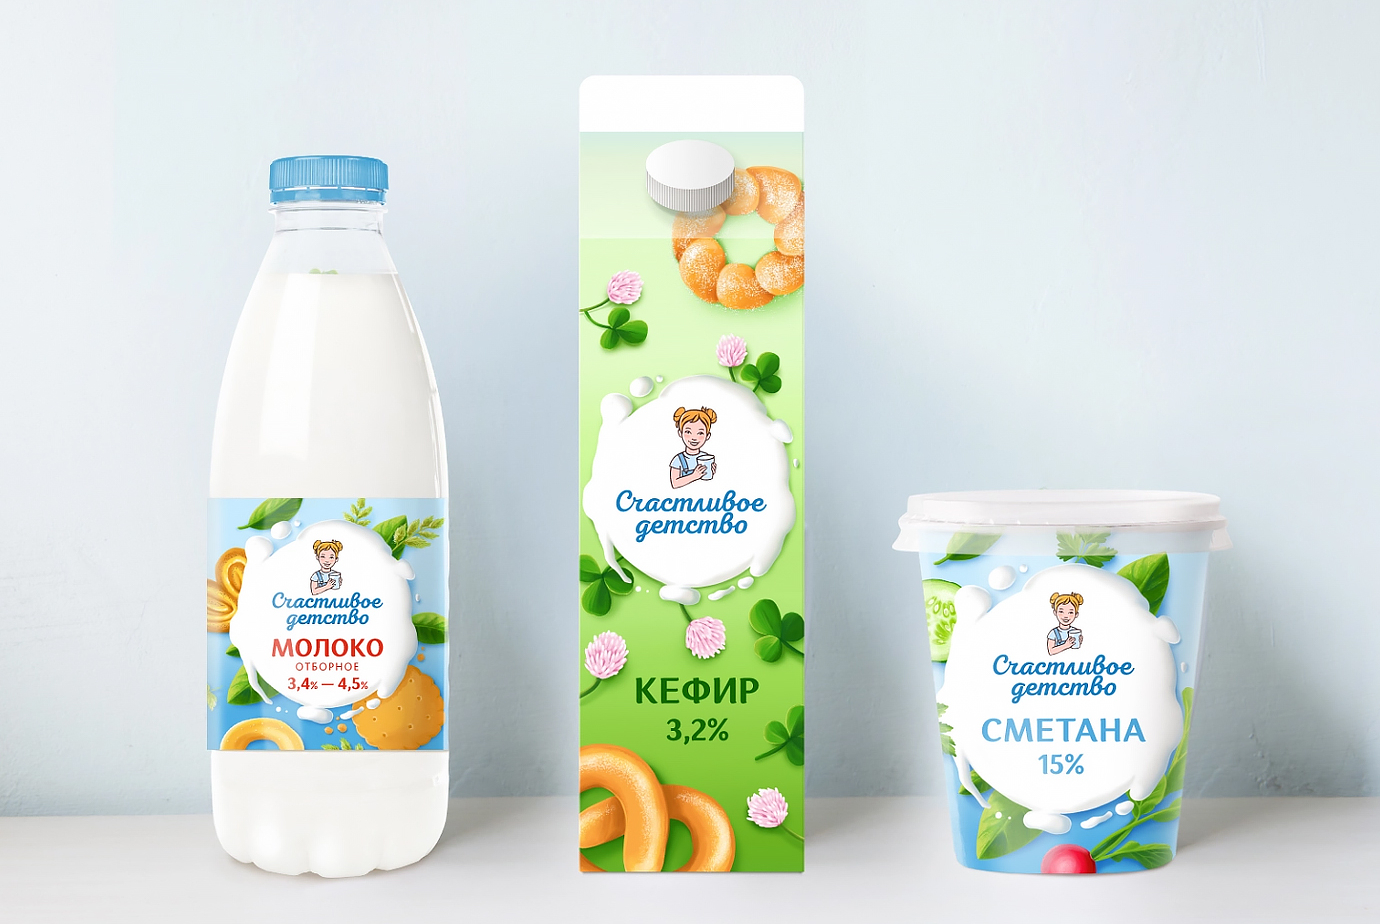 Дизайн этикетки для новго бренда молочных продуктов "Счастливое детство"